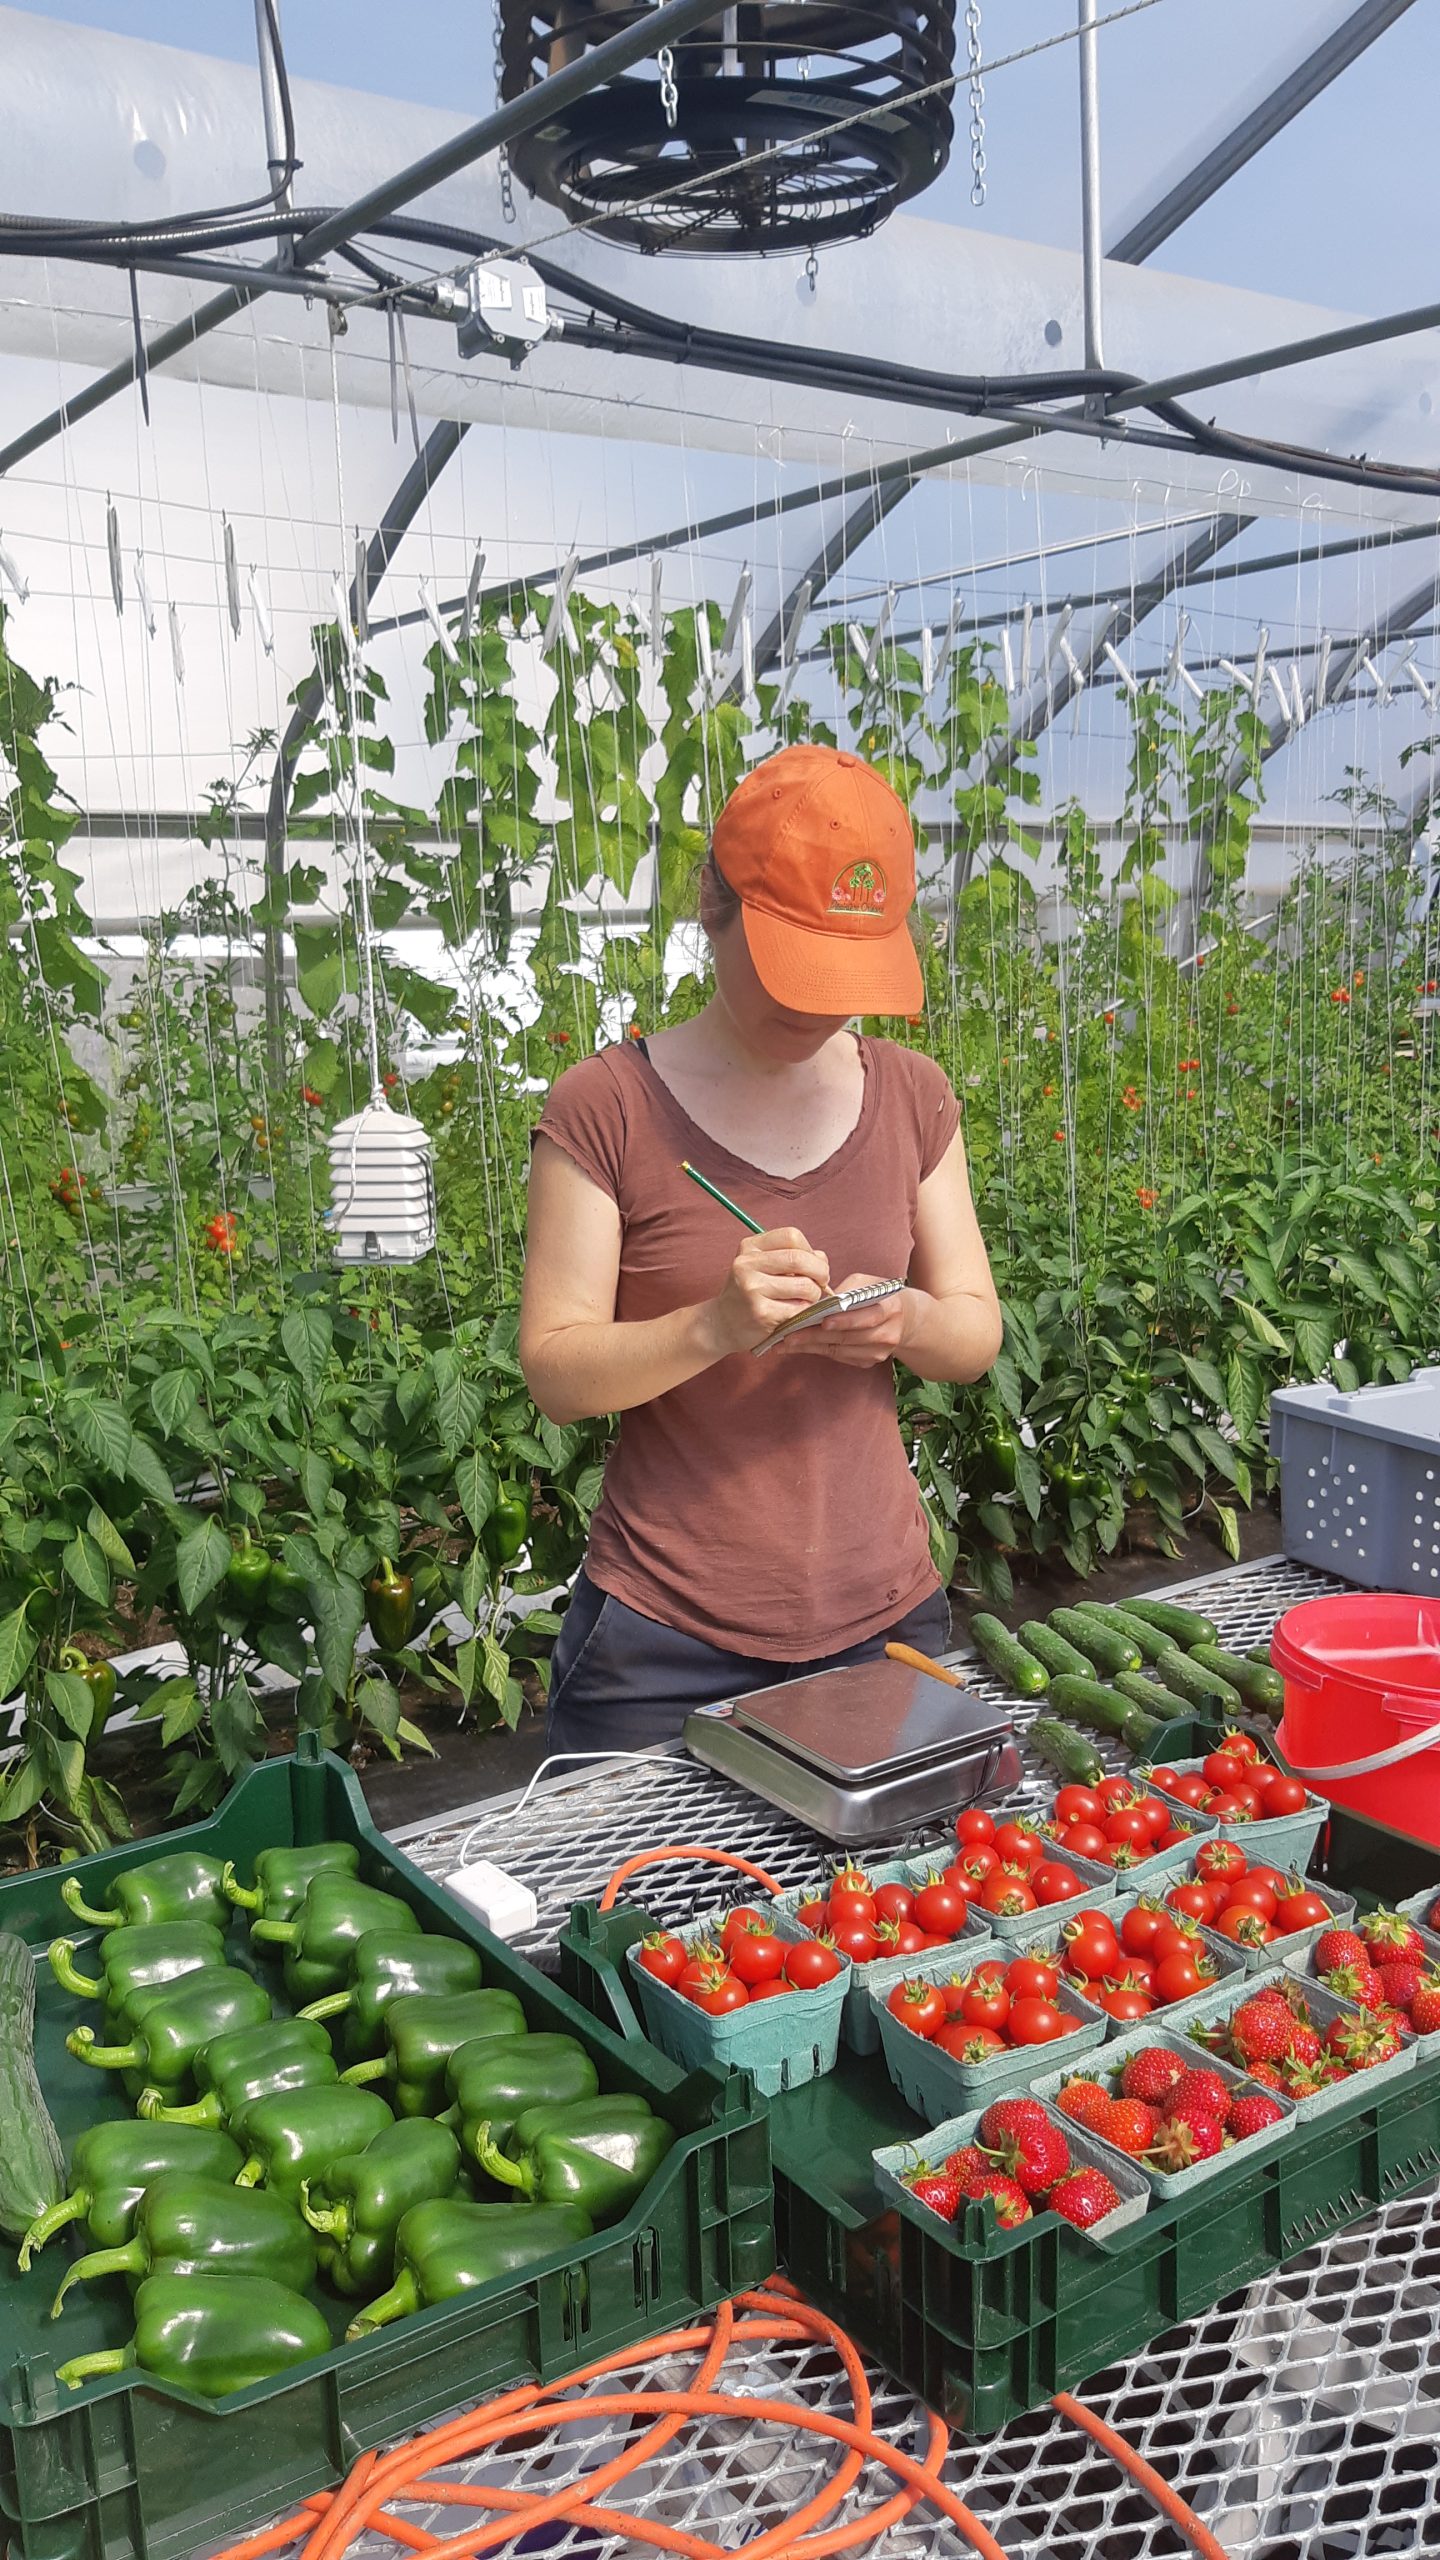 Une personne portant une casquette orange se tient devant une table recouverte des récoltes de la ferme: des poivrons verts et des tomates cerises